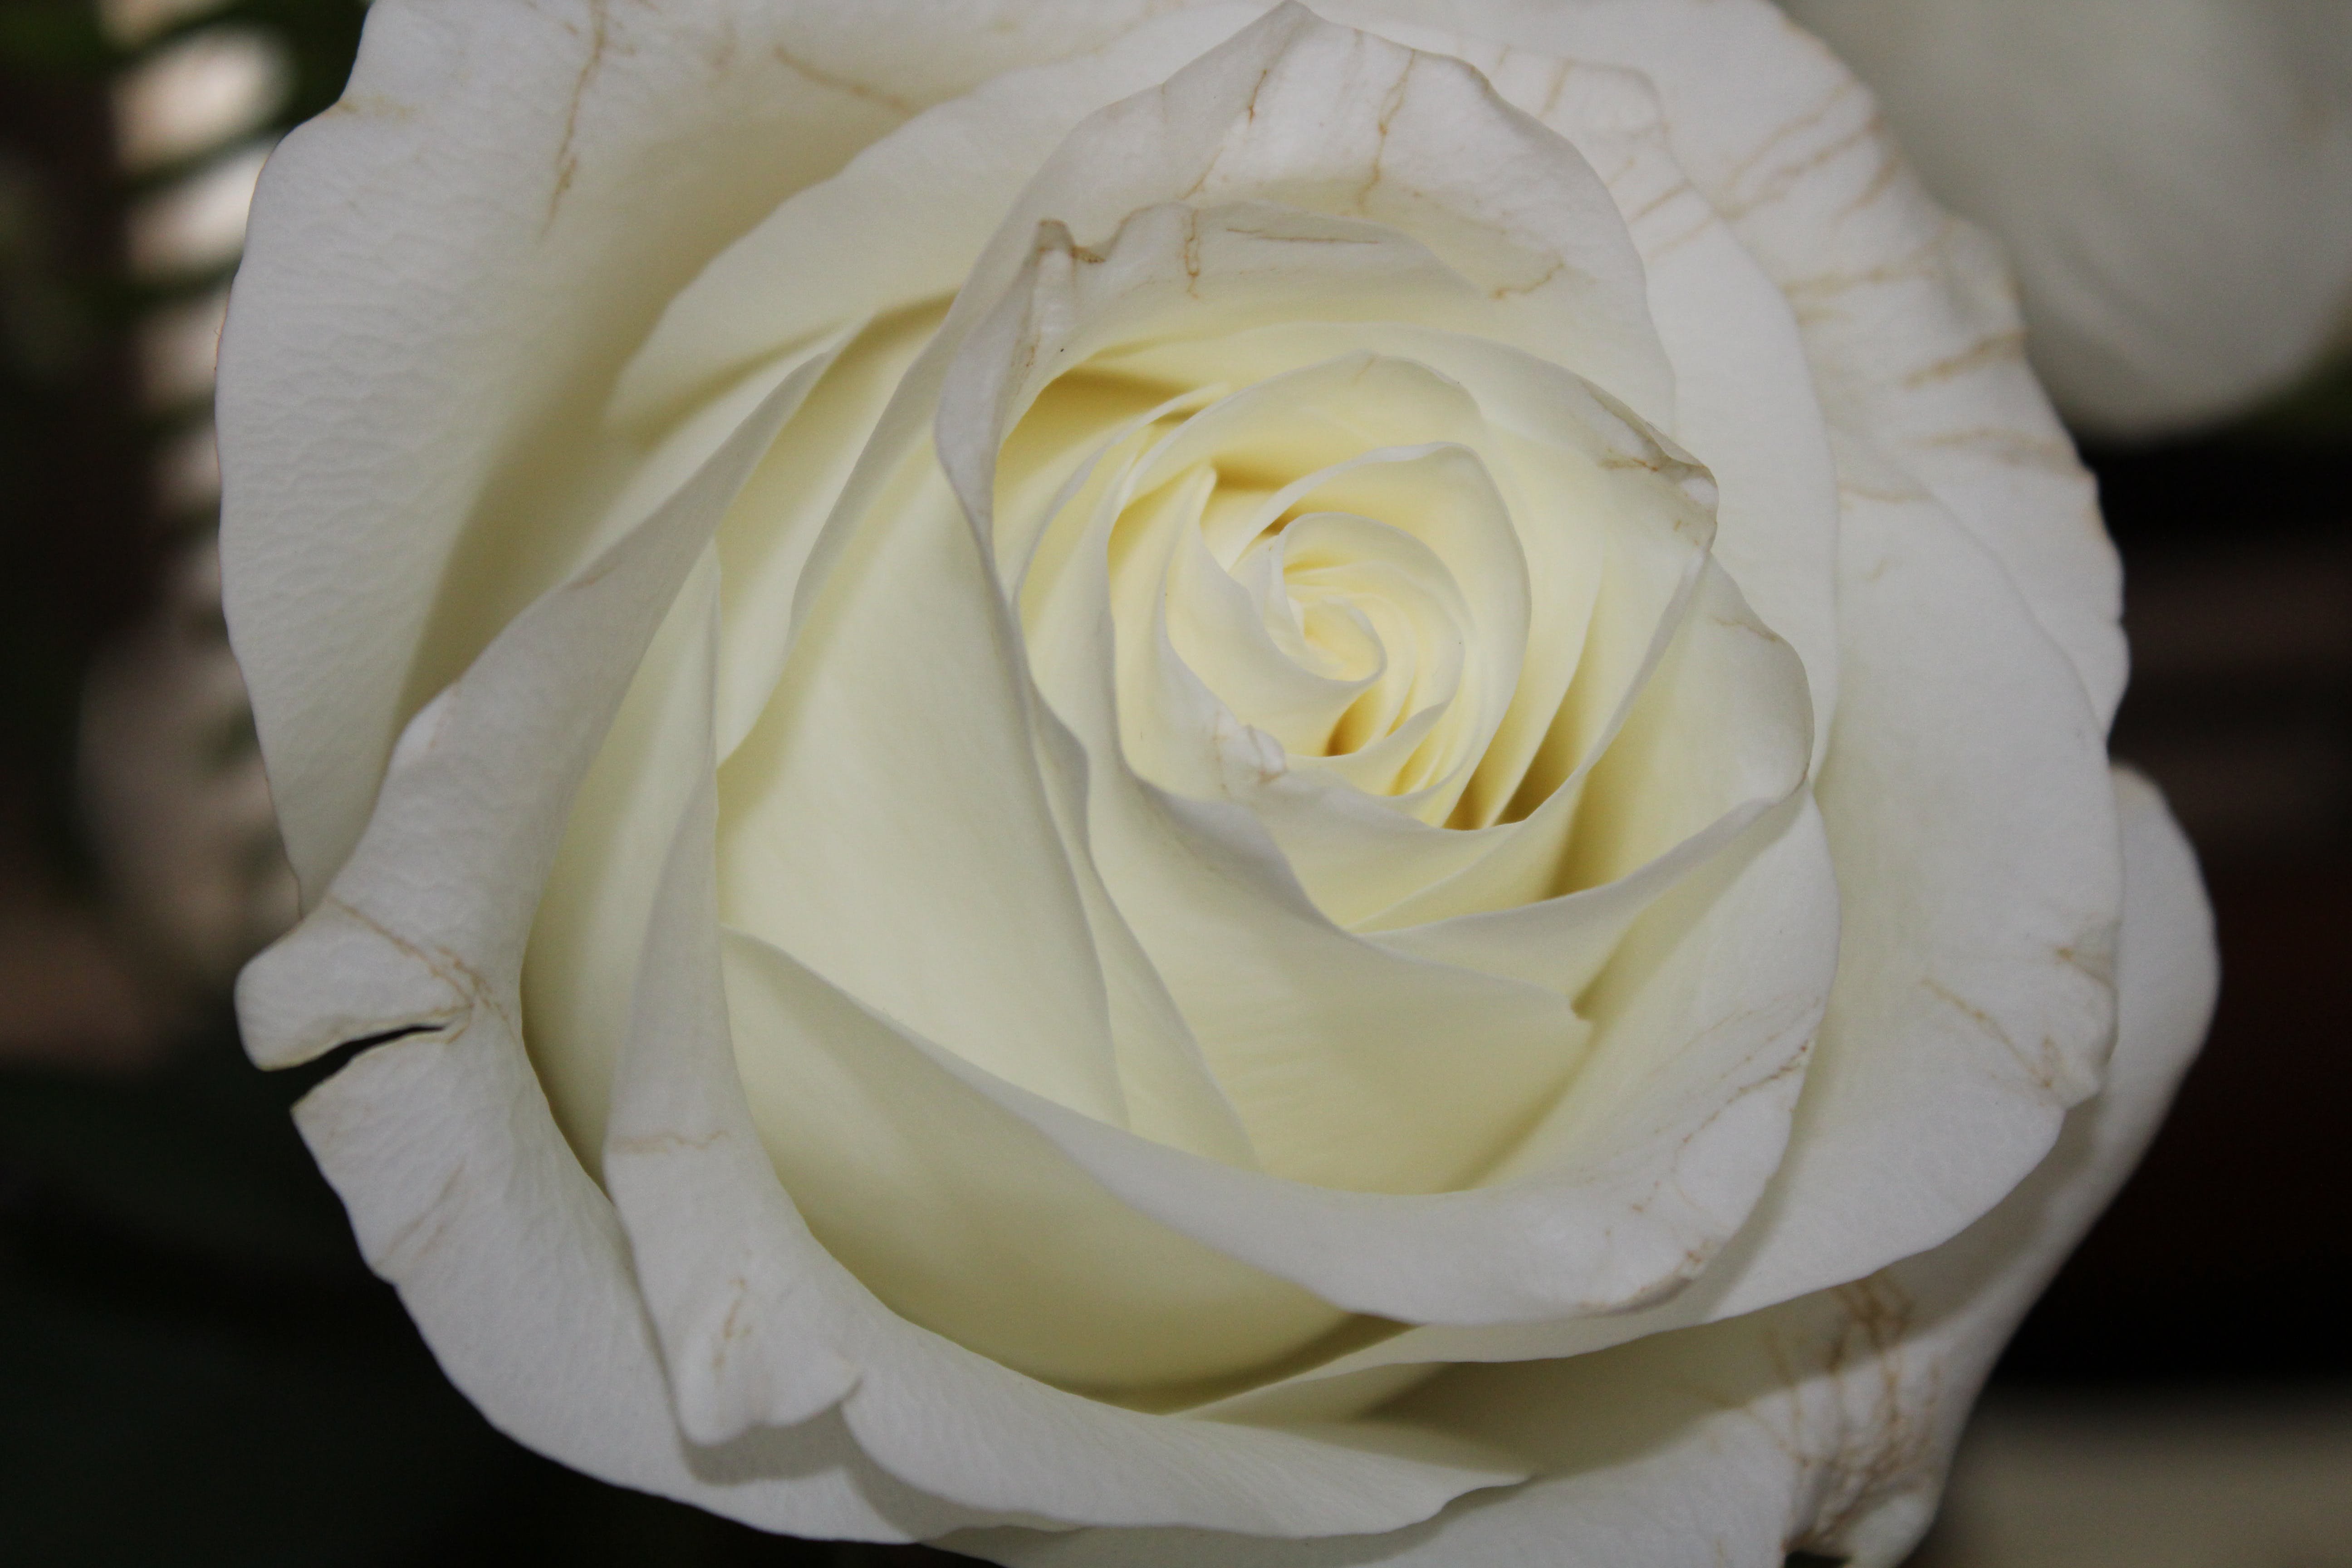 Сорта белых роз фото и названия для средней полосы